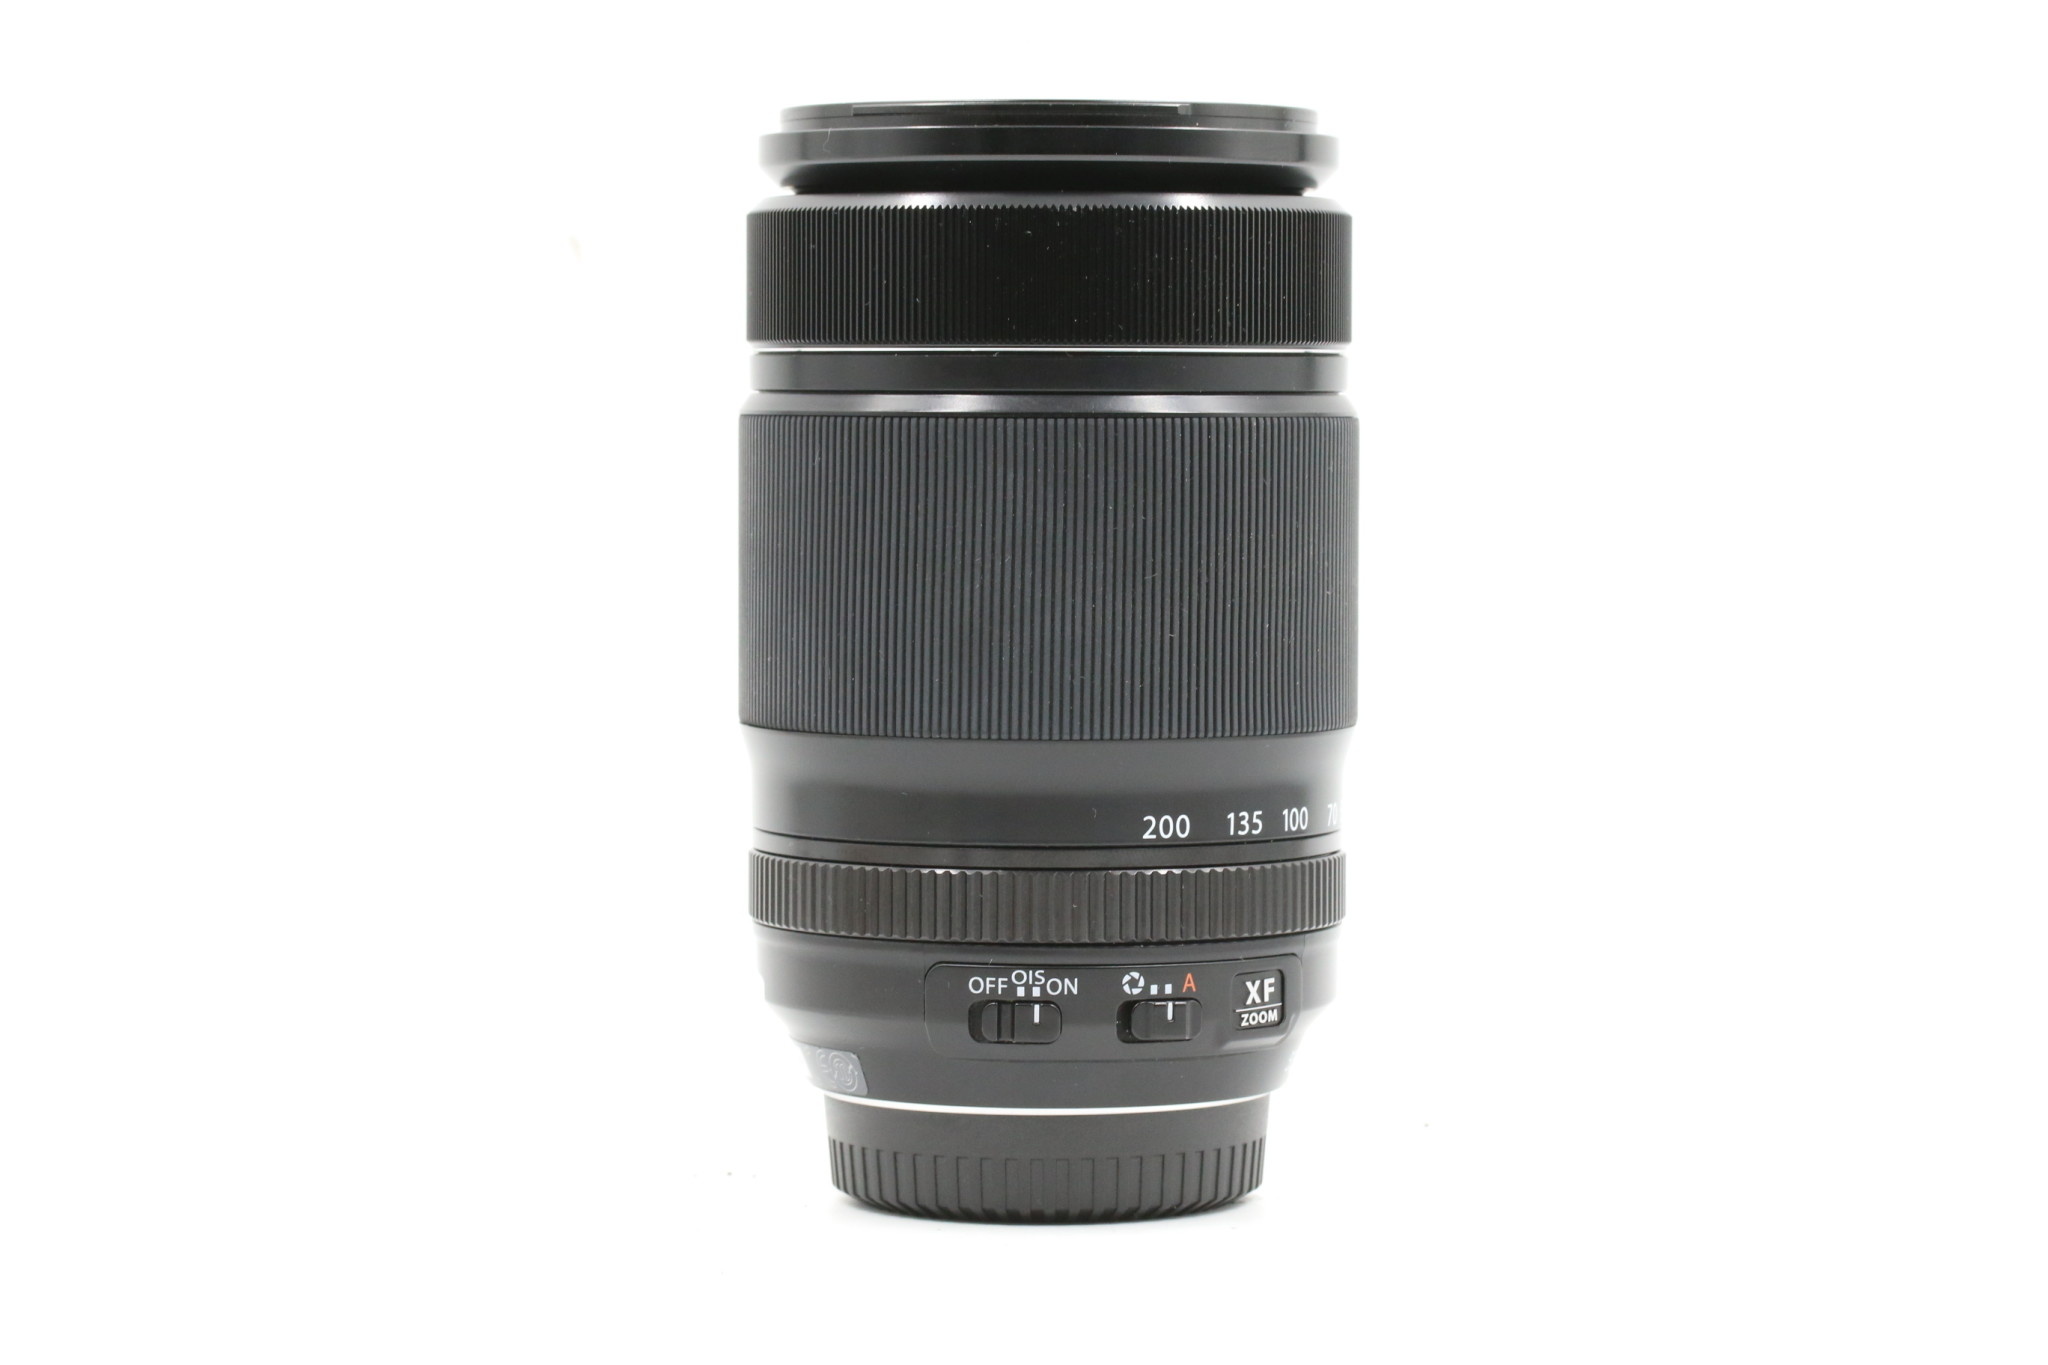 Fujifilm Preowned Fuji XF 55-200 F3.5-4.8 R LM OIS Lens - Very